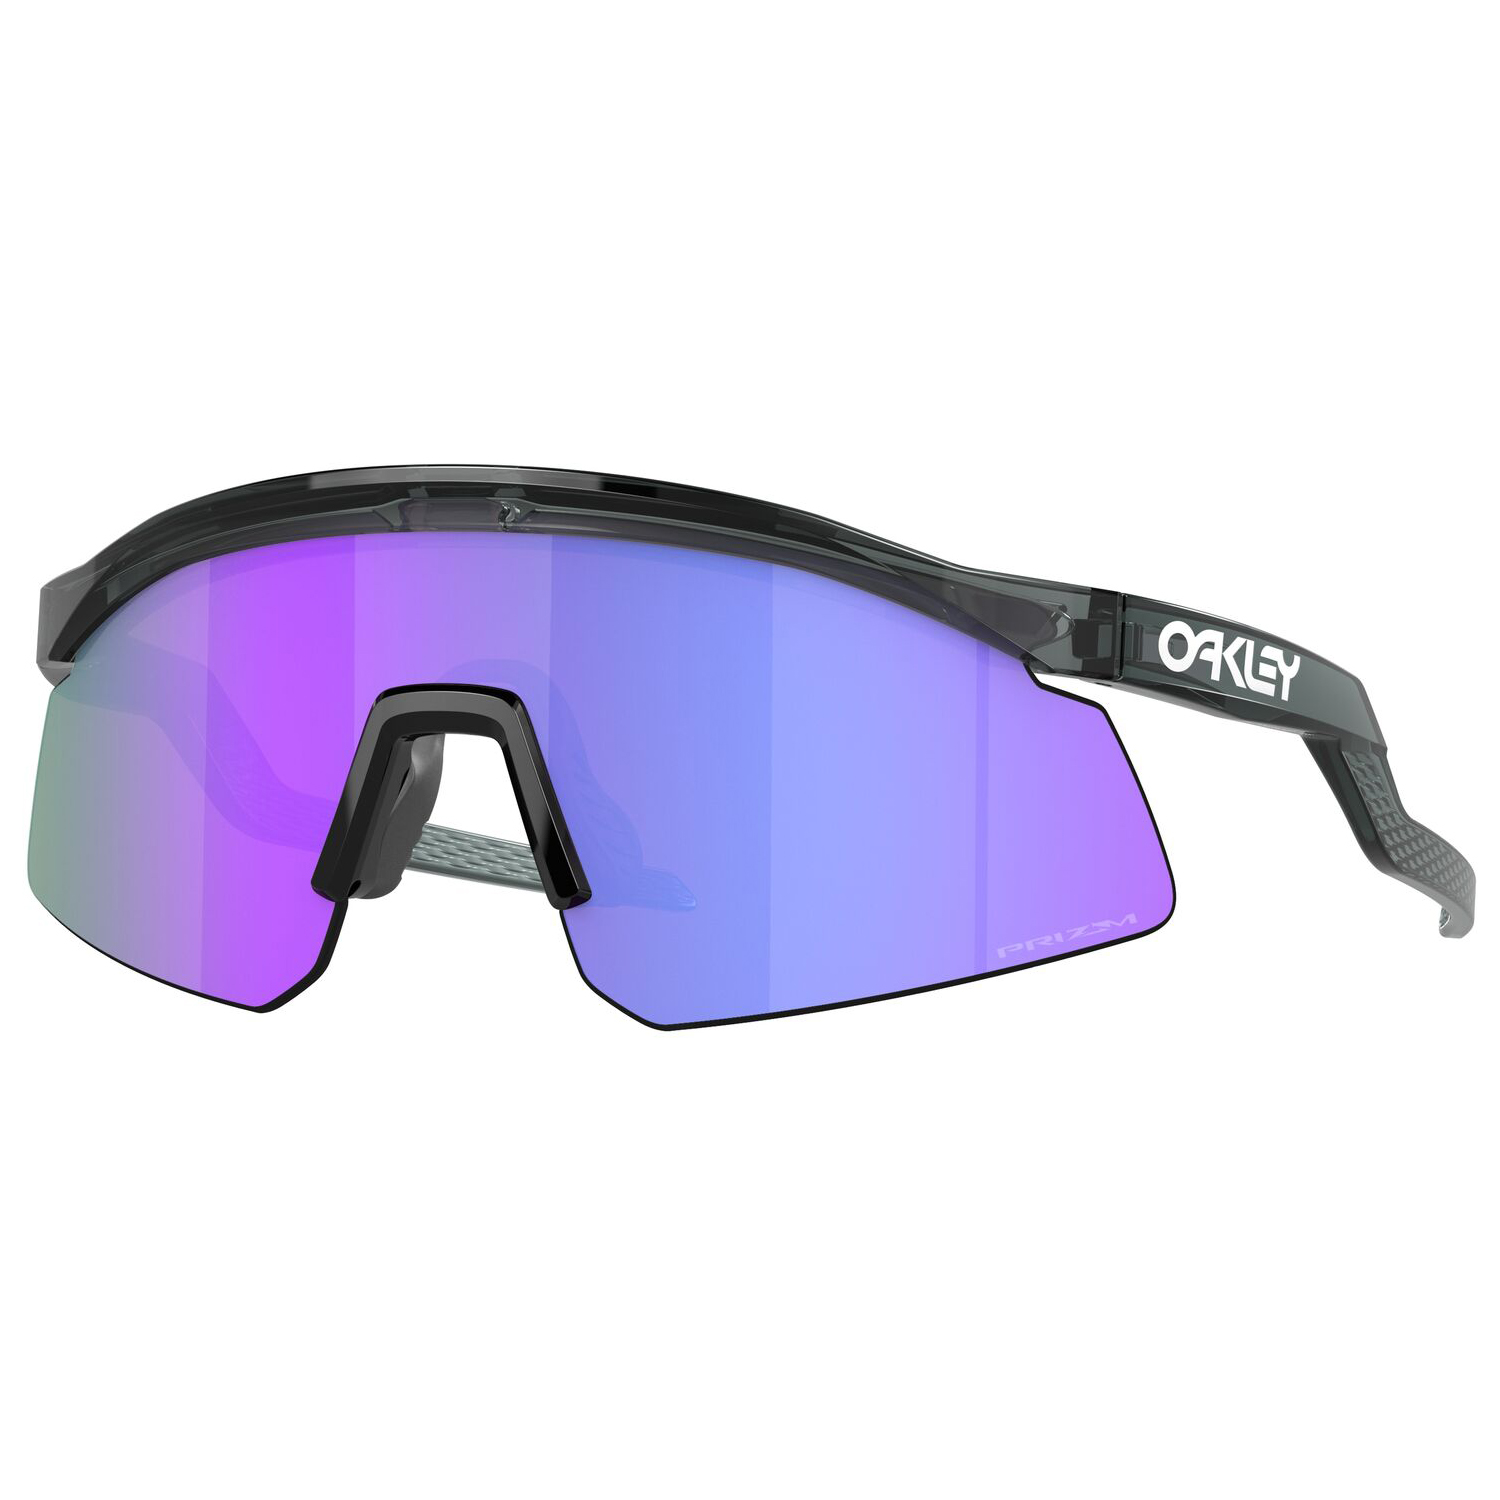 Велосипедные очки Oakley Hydra Prizm S3 (VLT 13%), цвет Crystal Black